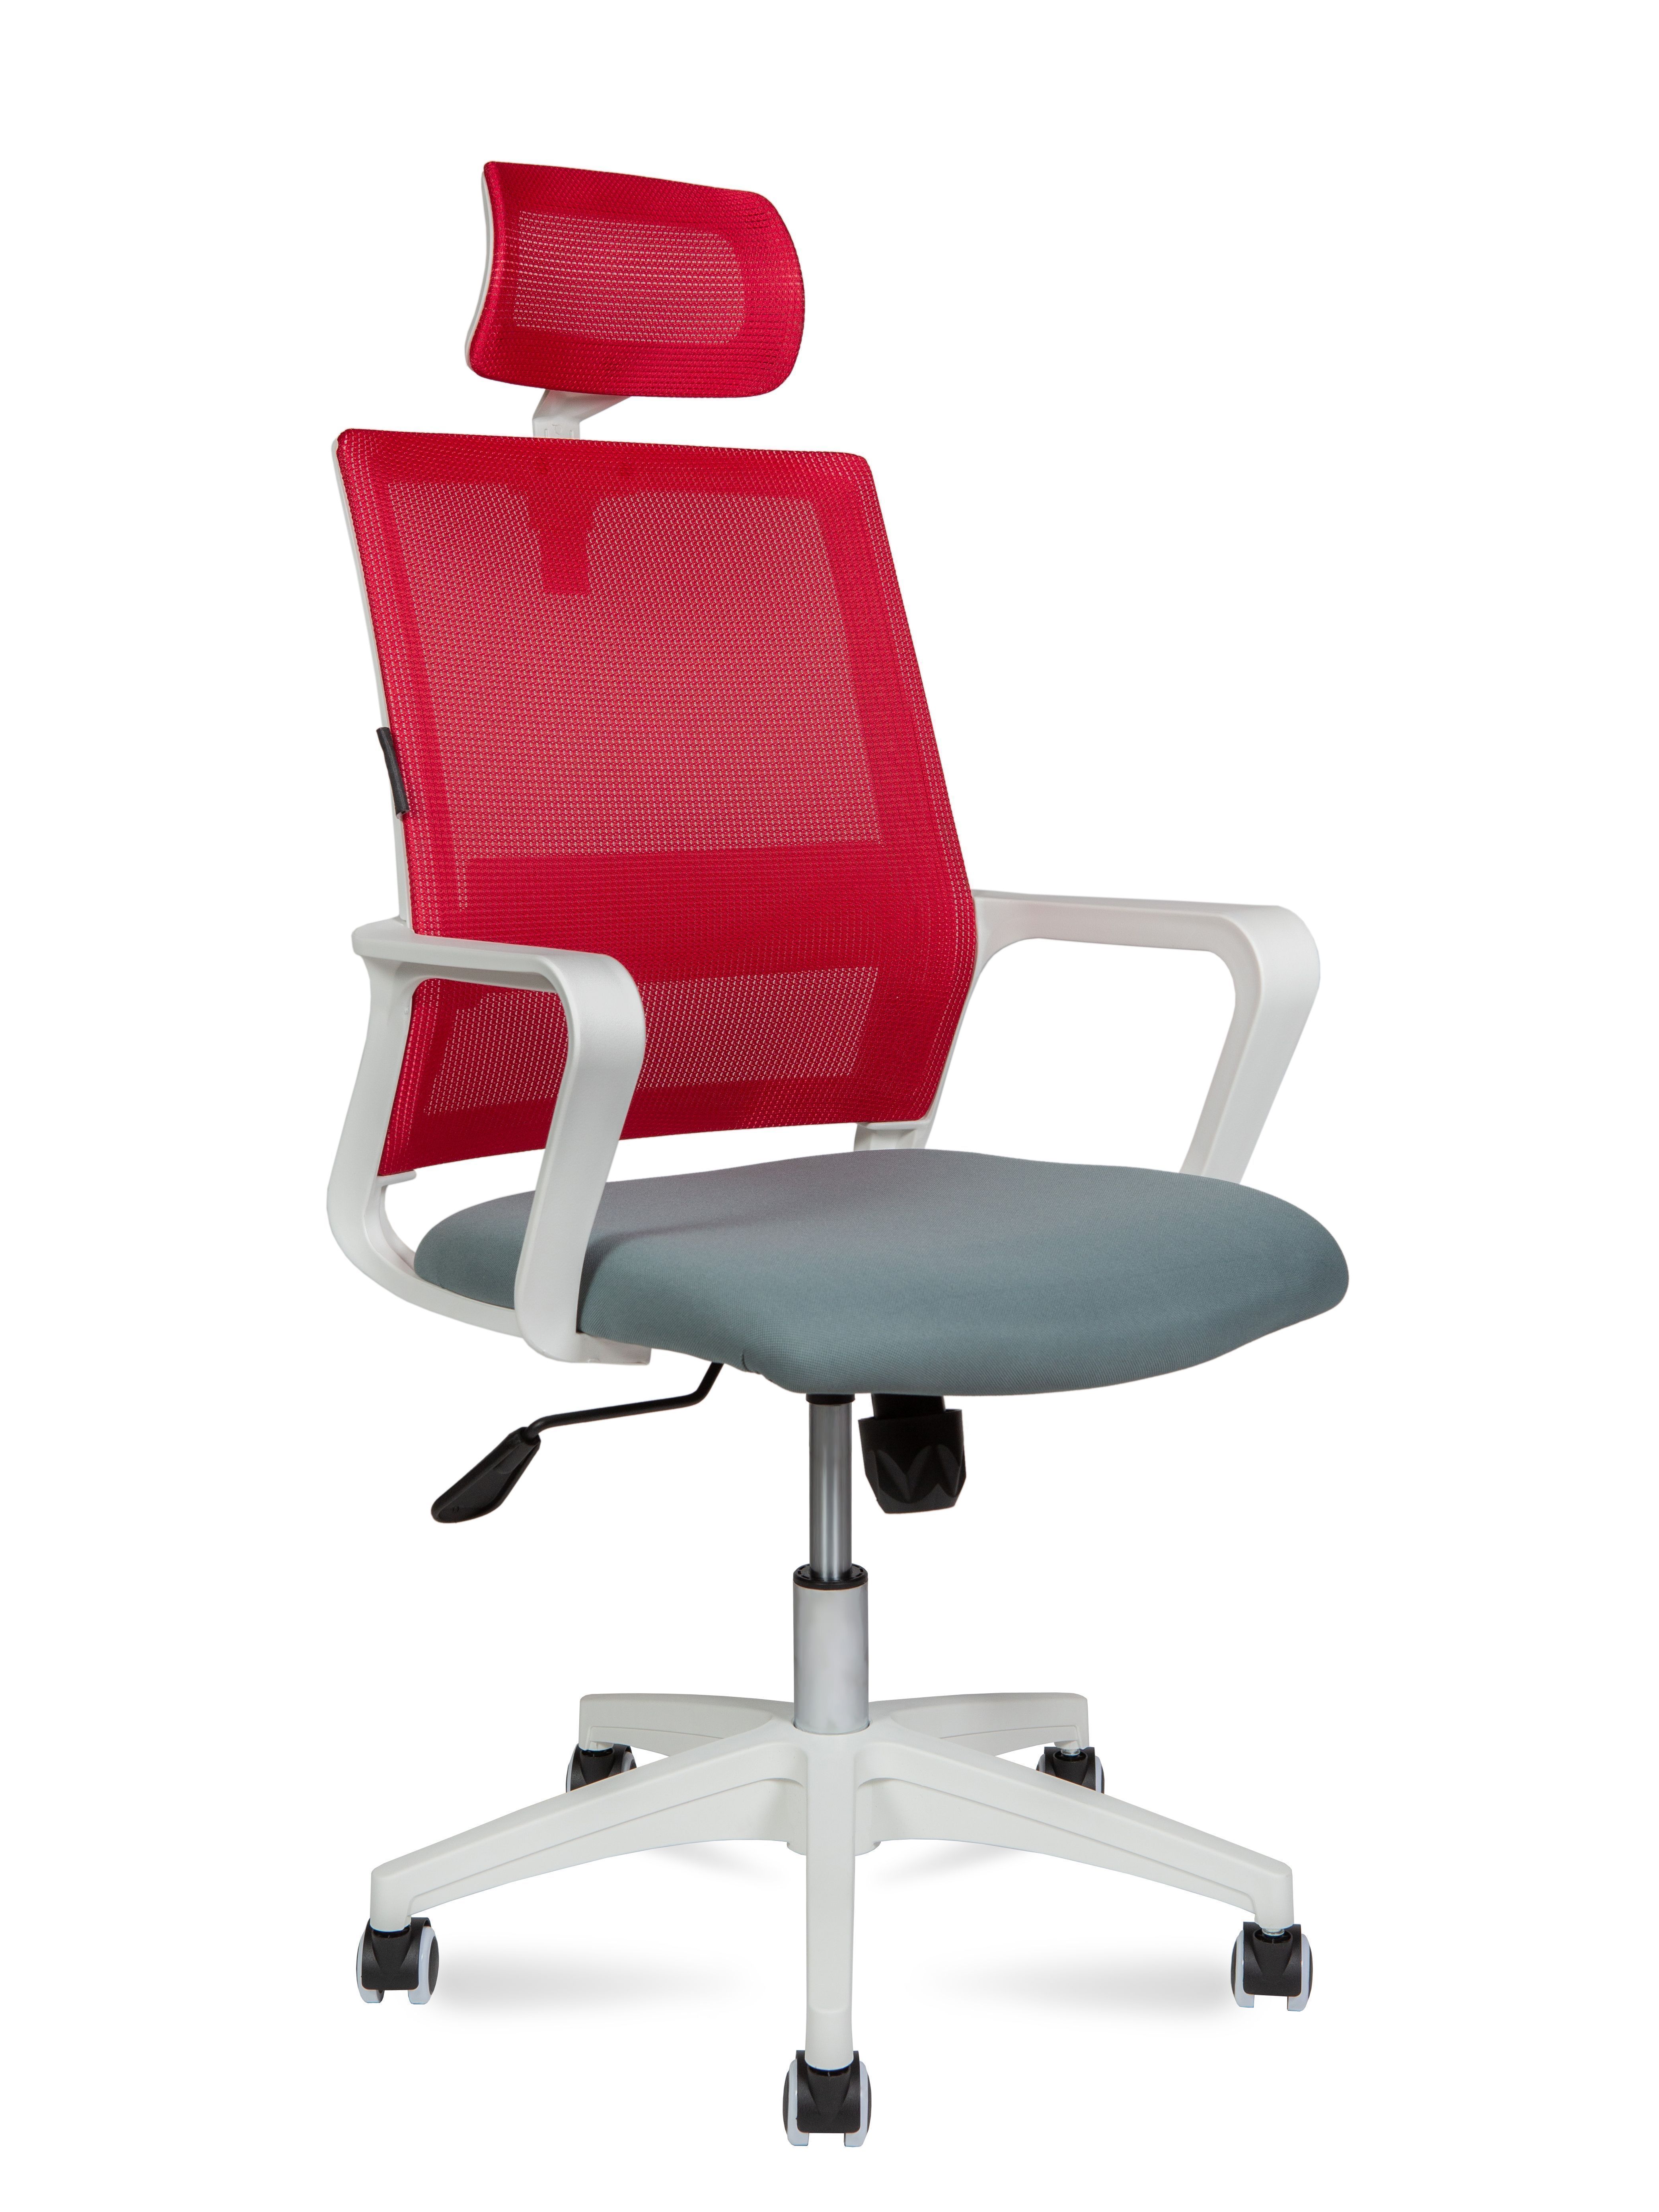 Кресло компьютерное Бит LB белый пластик красный / темно-серый 815BW-AF08-T58 NORDEN